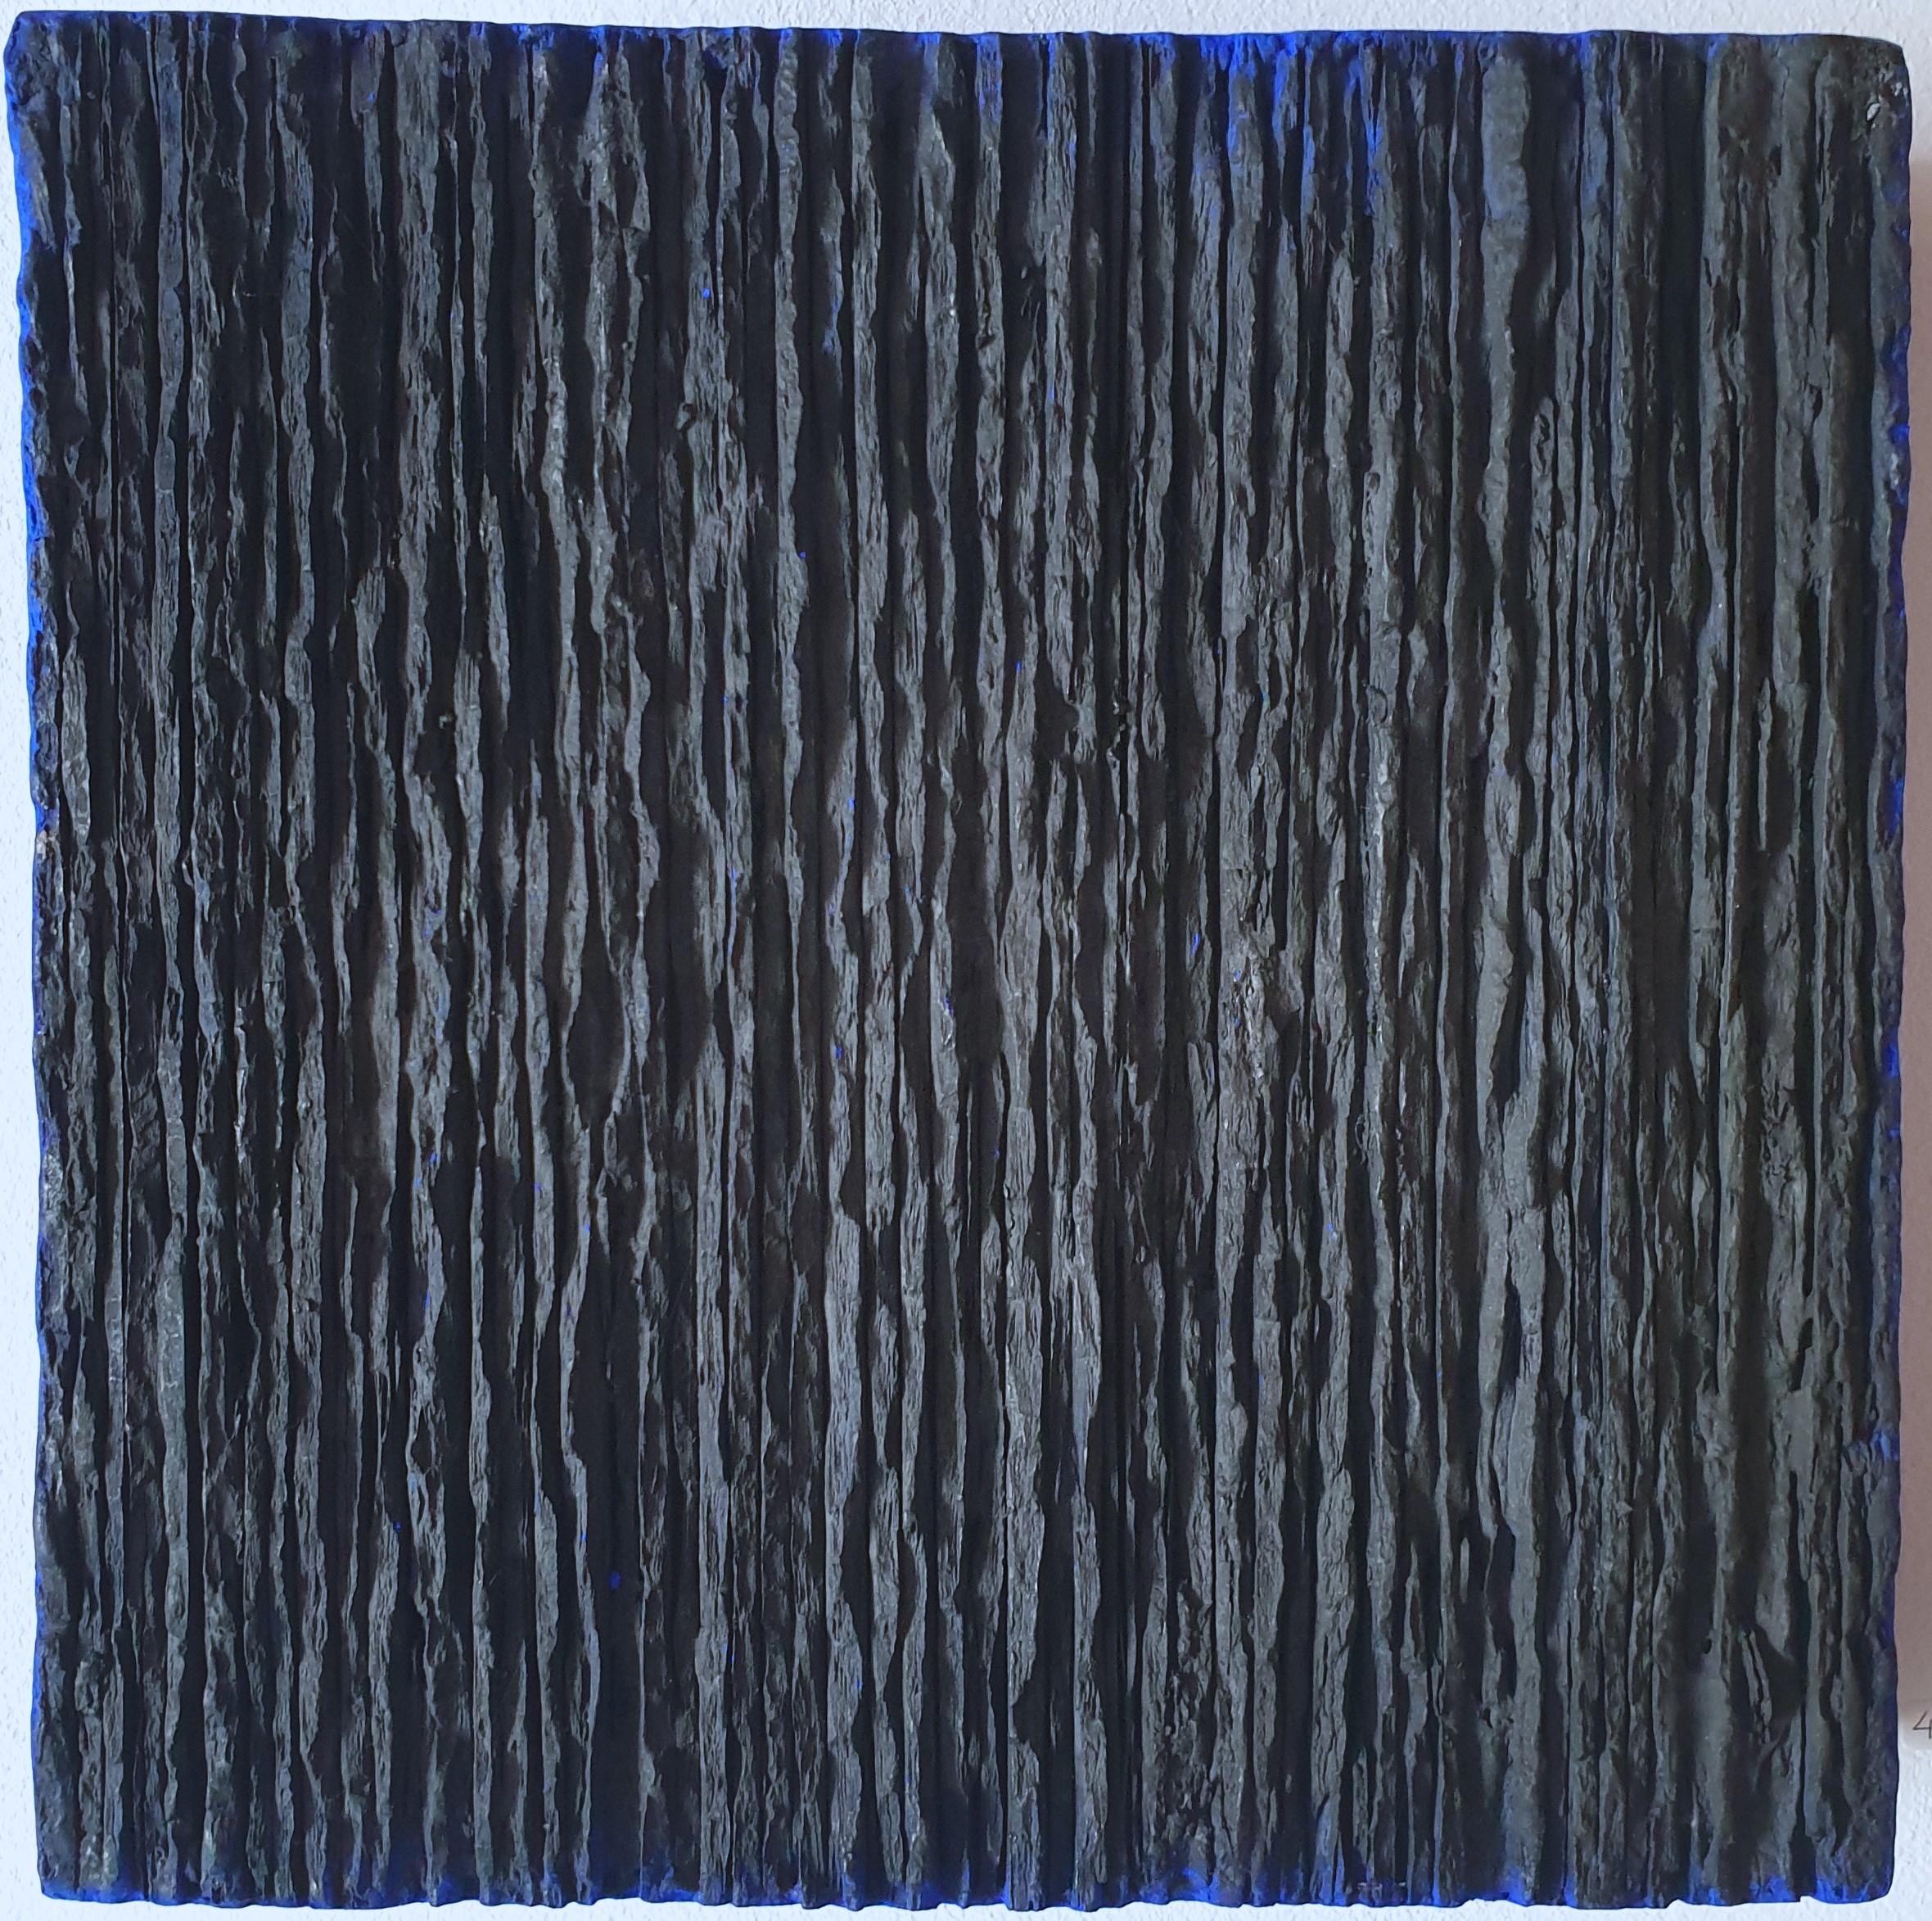 A Space - noir bleu contemporain moderne abstrait sculpture peinture relief